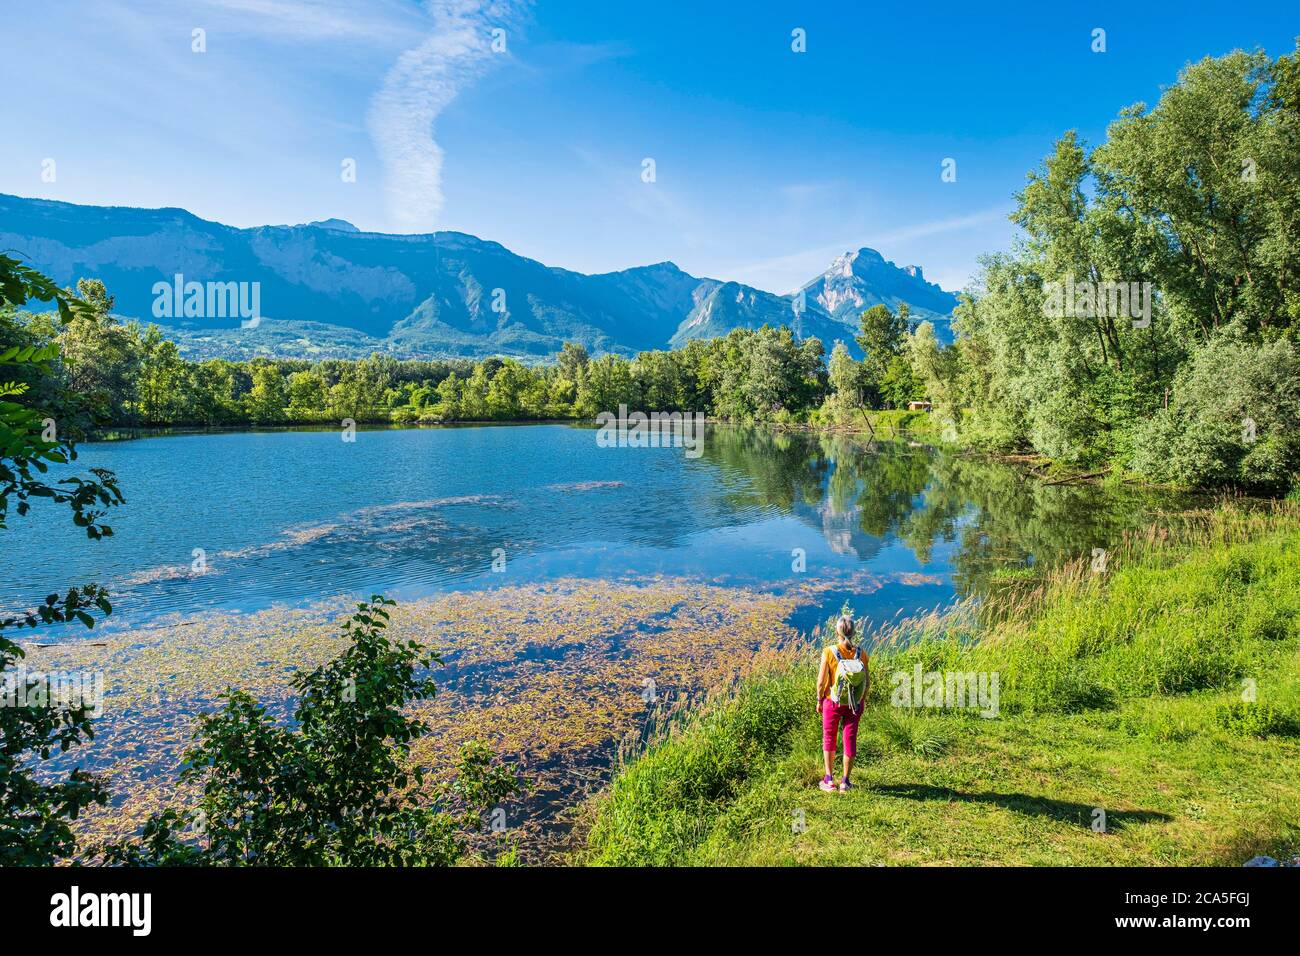 France, Isere, vallée de Gresivaudan, environs de Grenoble, parc de loisirs  Bois Fran?ais, lac Belledonne et massif de la Chartreuse en arrière-plan  Photo Stock - Alamy